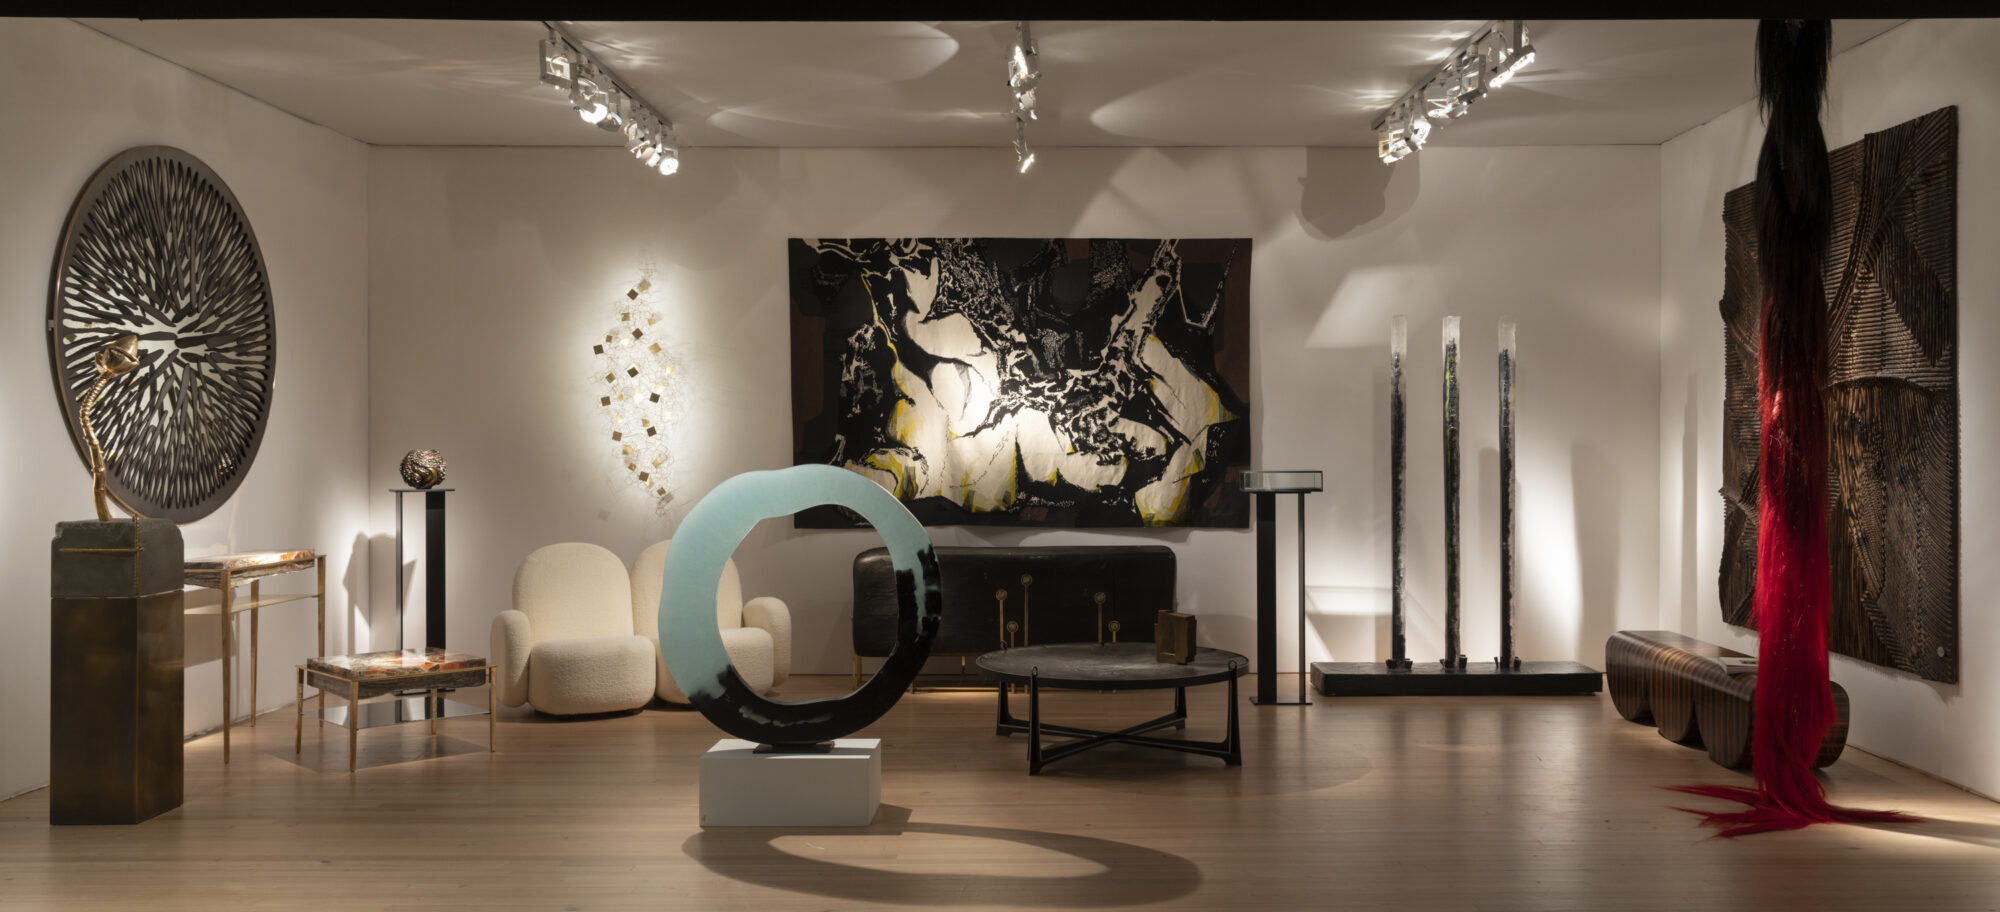 Harmony & contrasts - Galerie Negropontes